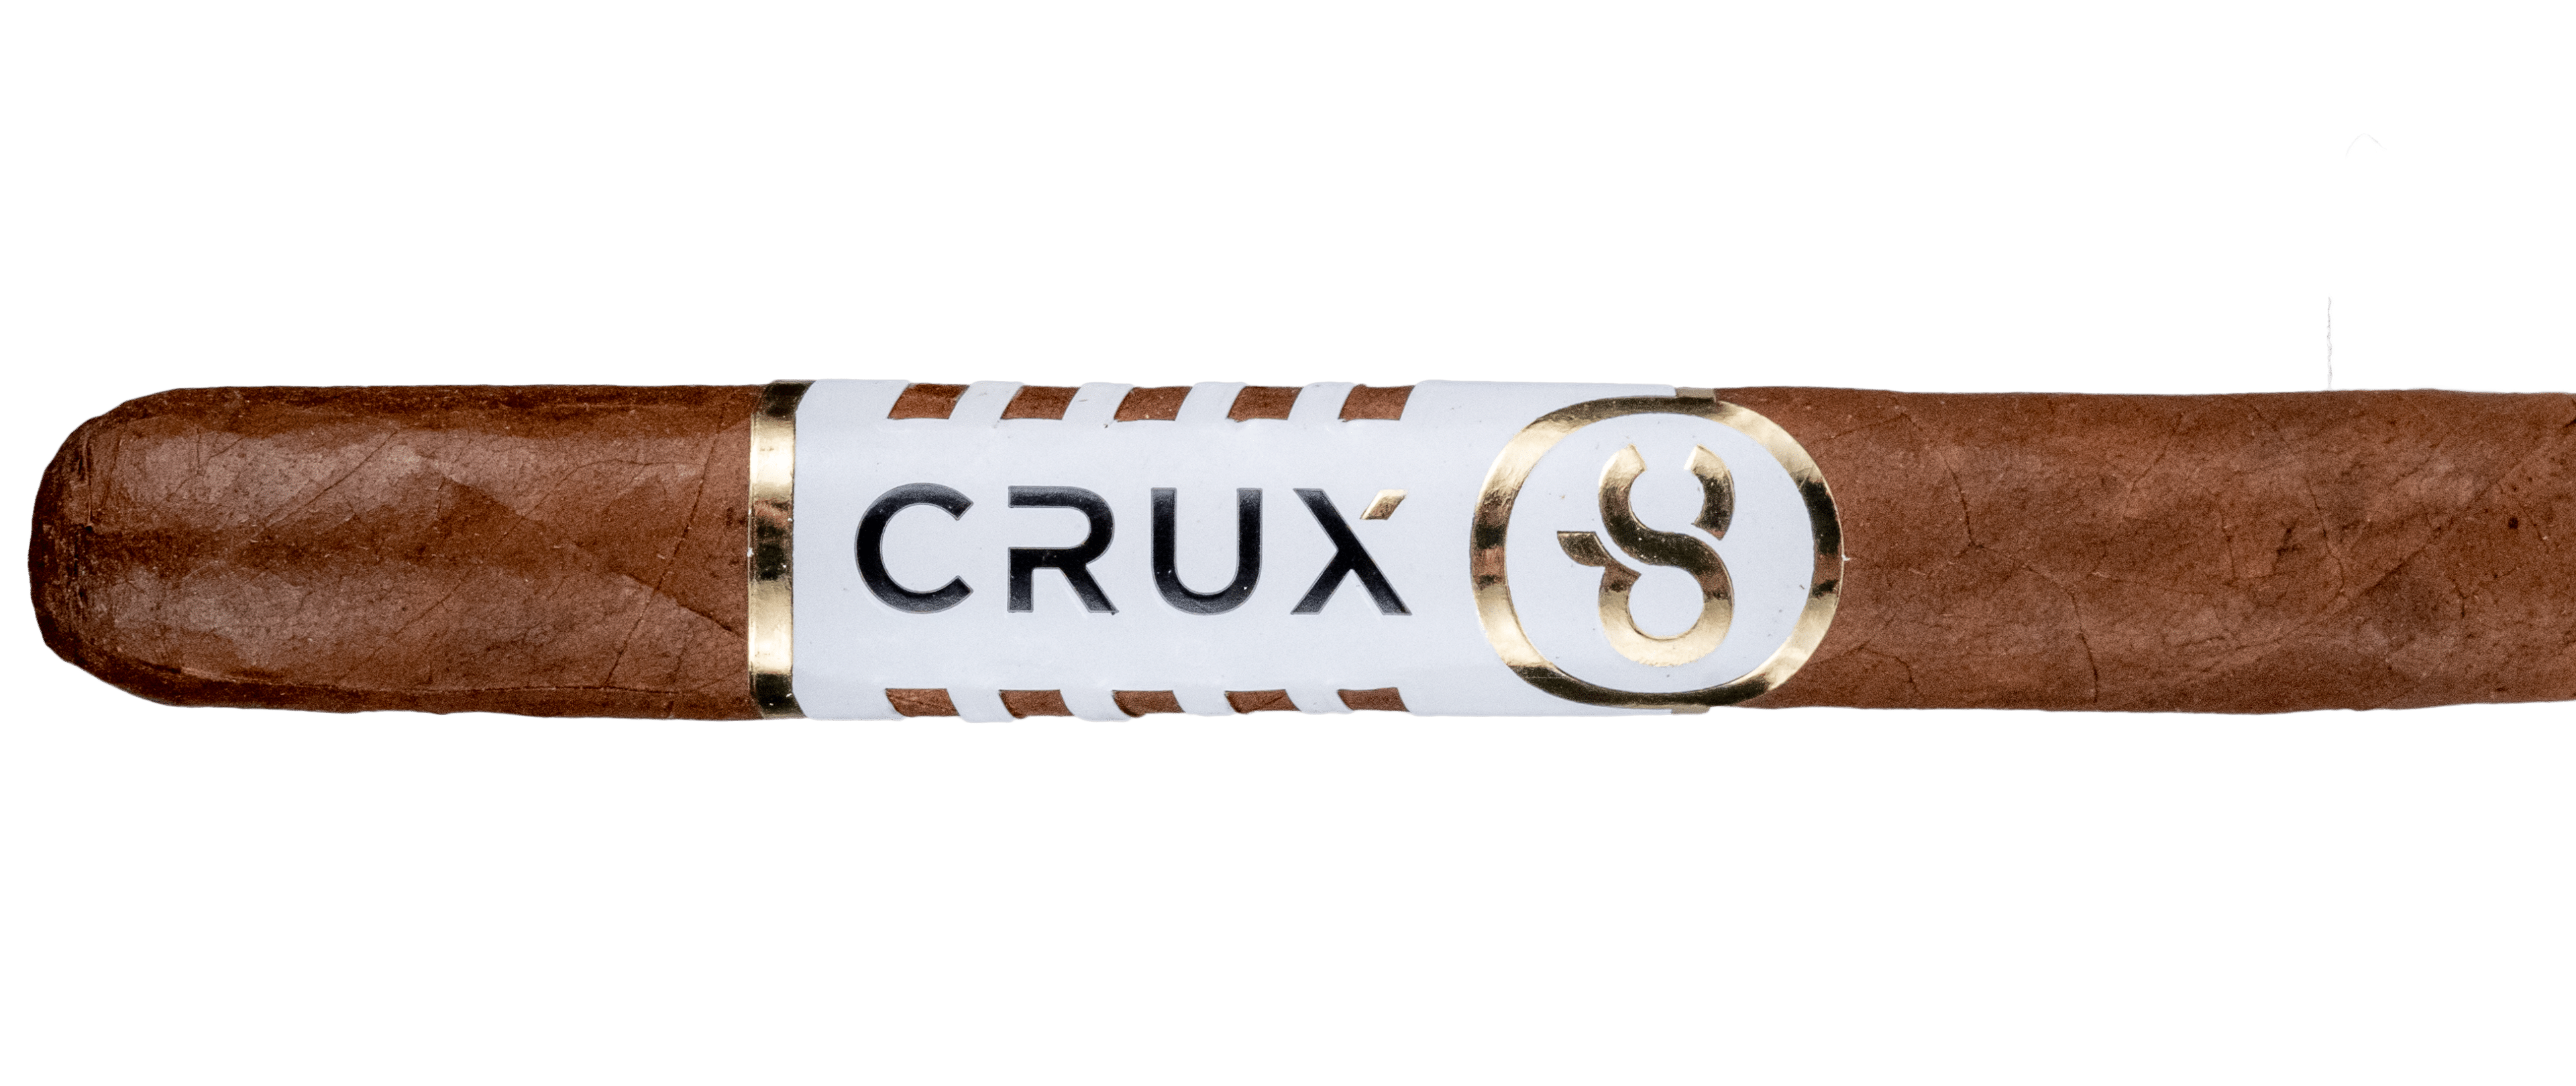 Crux du Connoisseur No. 2 - Blind Cigar Review